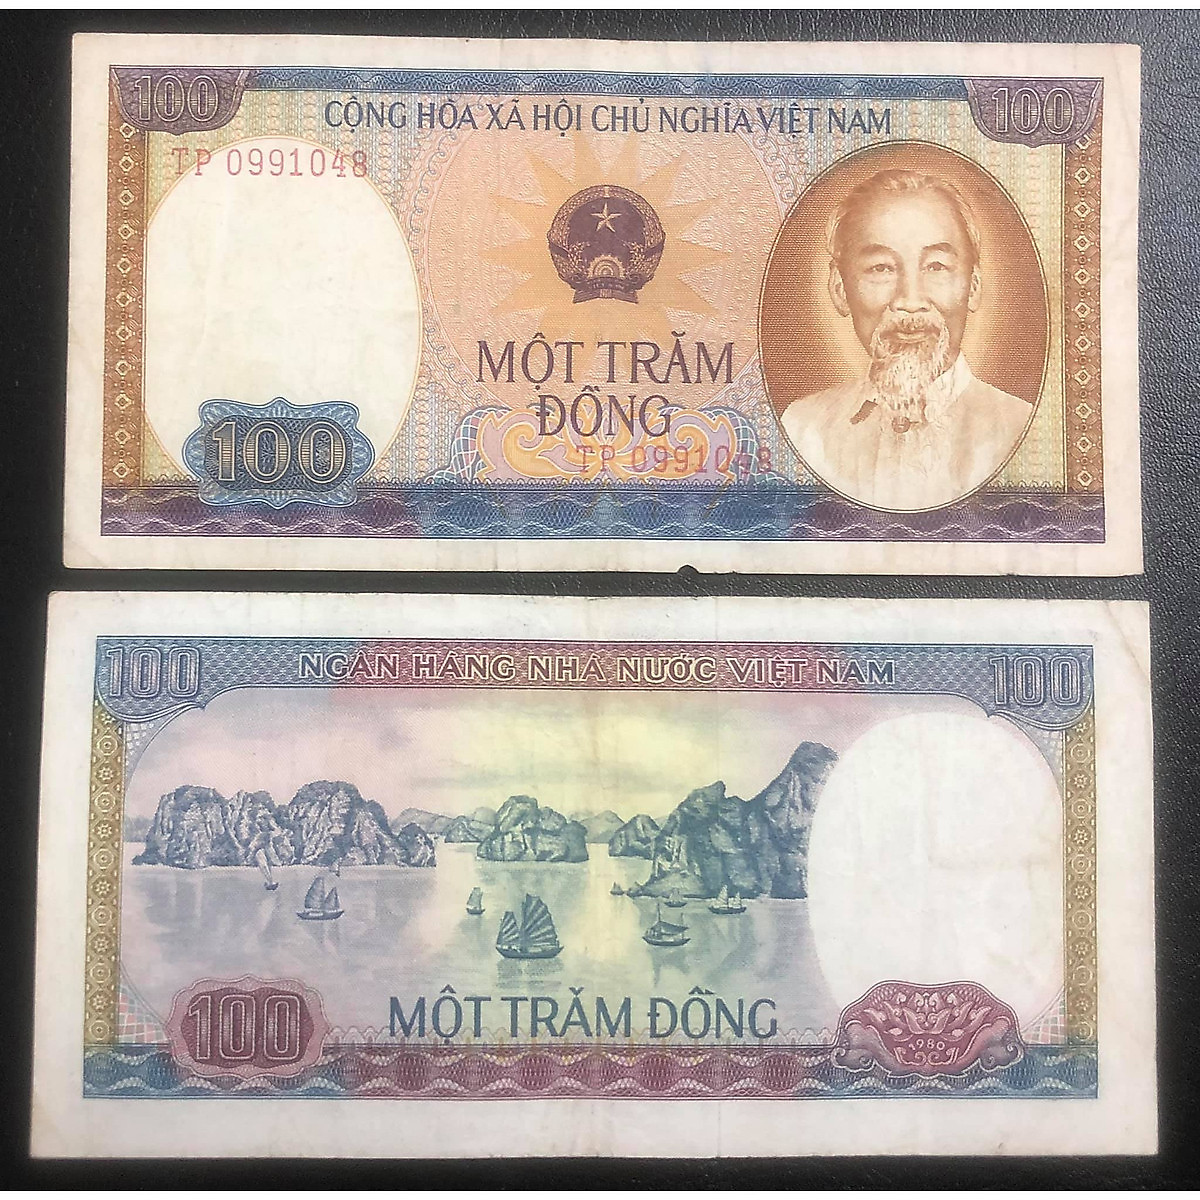 Tờ tiền 100 đồng với bức hình Công viên Quốc gia Phong Nha - Kẻ Bàng nổi tiếng sẽ khiến bạn đắm say trong vẻ đẹp hùng vĩ của núi rừng, động thạch nhũ và hang động quý hiếm. Đây chắc chắn là niềm tự hào của người Việt Nam!